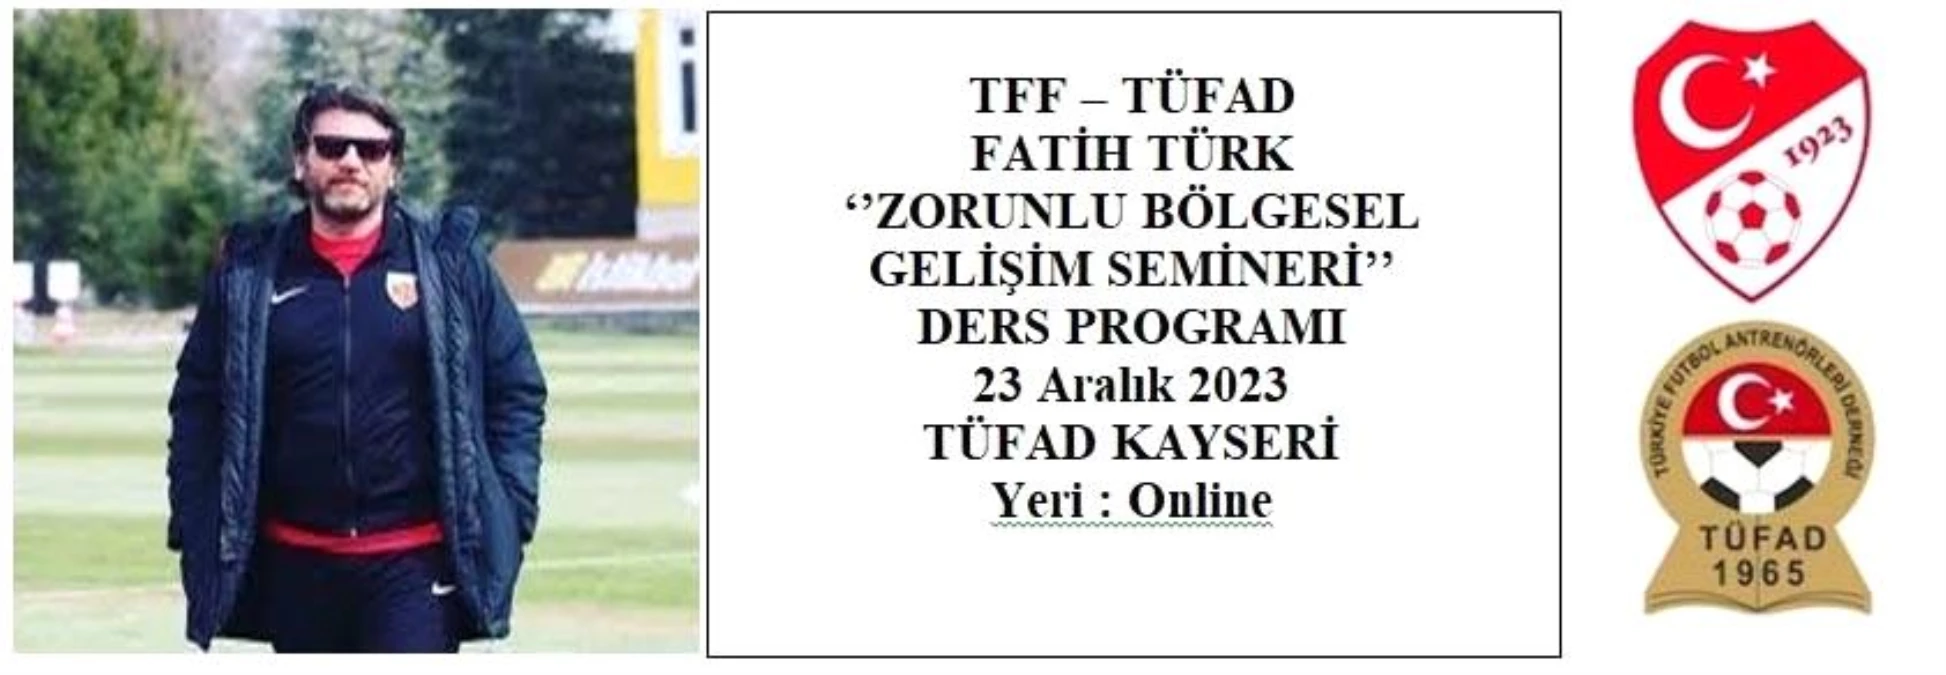 TFF-TÜFAD Zorunlu Bölgesel Gelişim Semineri Kayseri\'de yapılacak